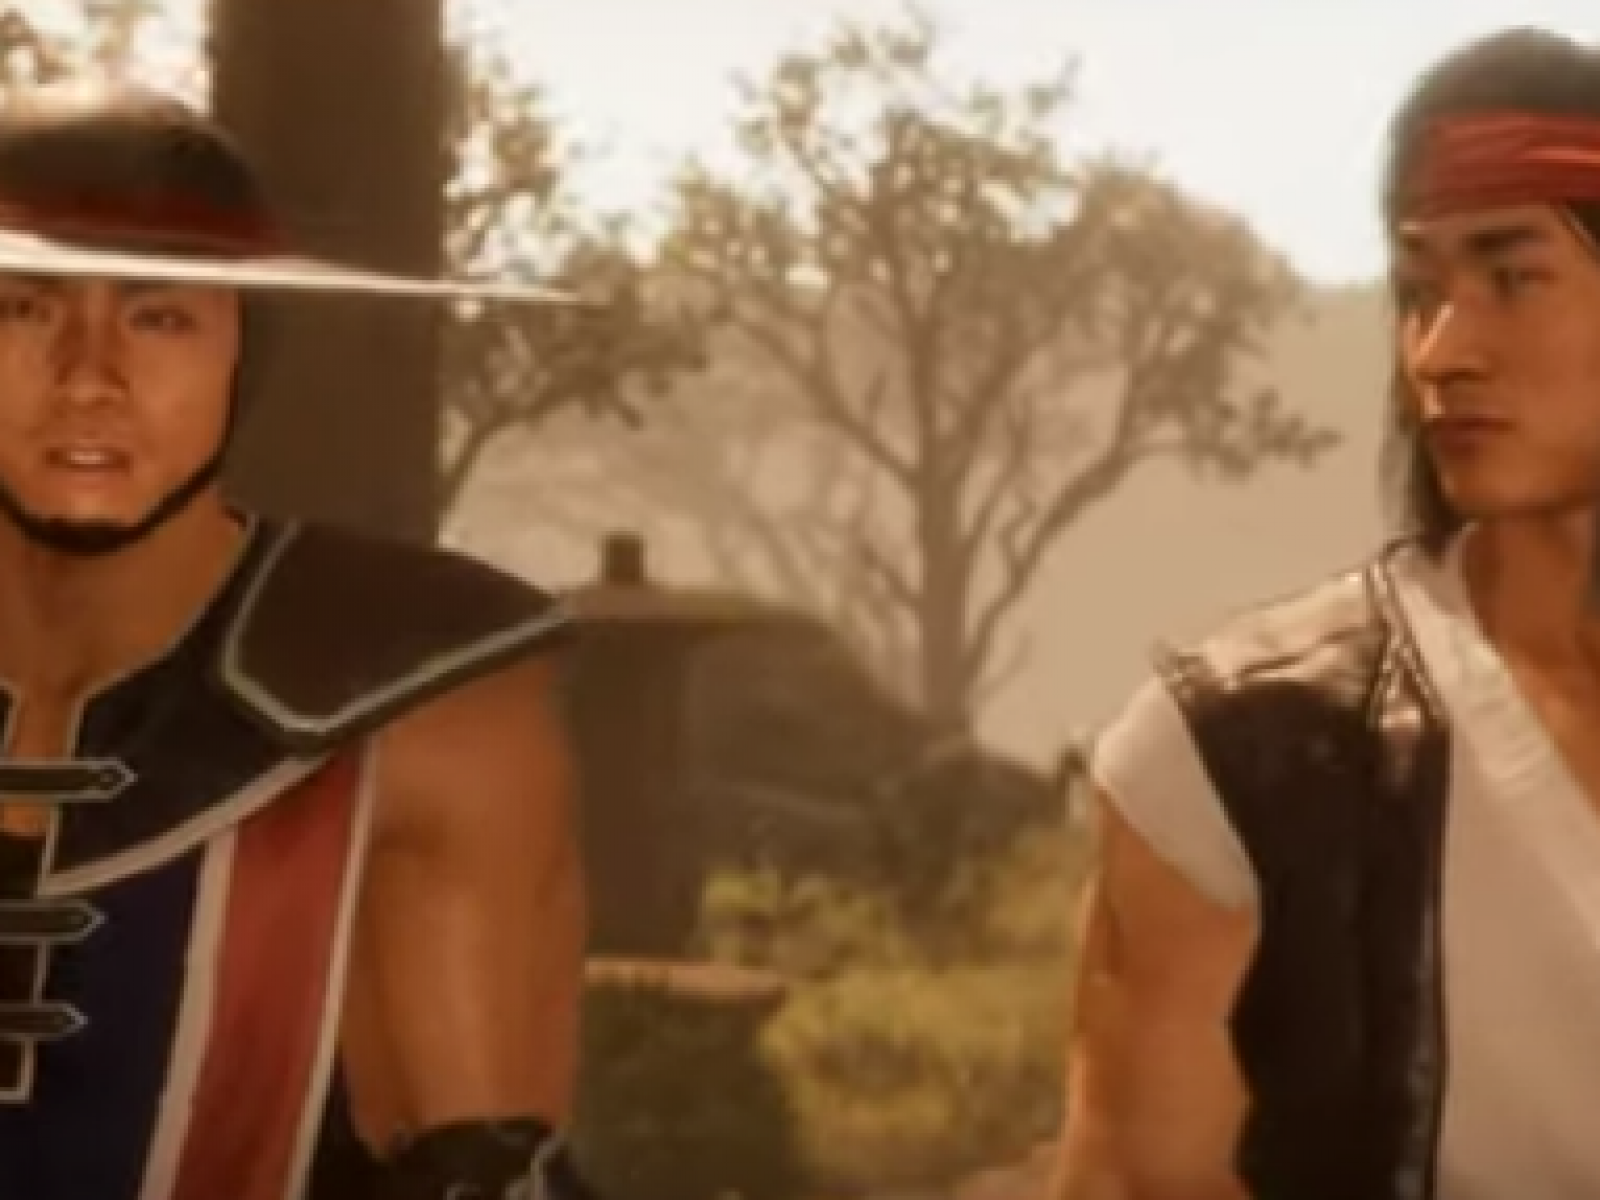 New 'Mortal Kombat 11' Confirms Liu Kang, Kung Lao and Jax Roster Additions